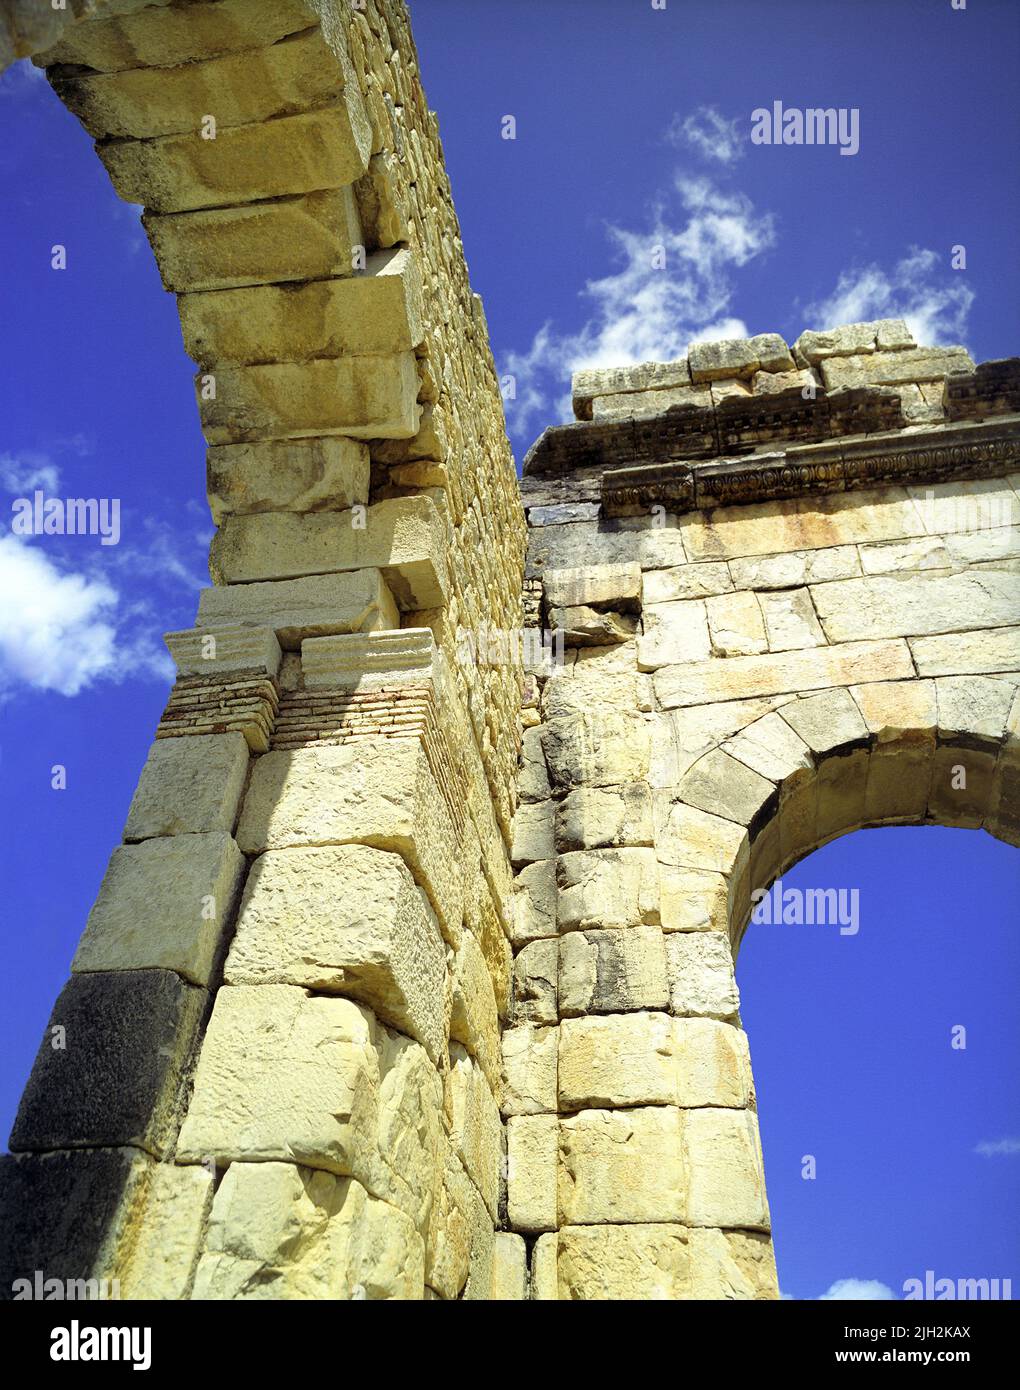 Arcades en pierre sur les ruines romaines de Volubilis. Meknes, Maroc Banque D'Images